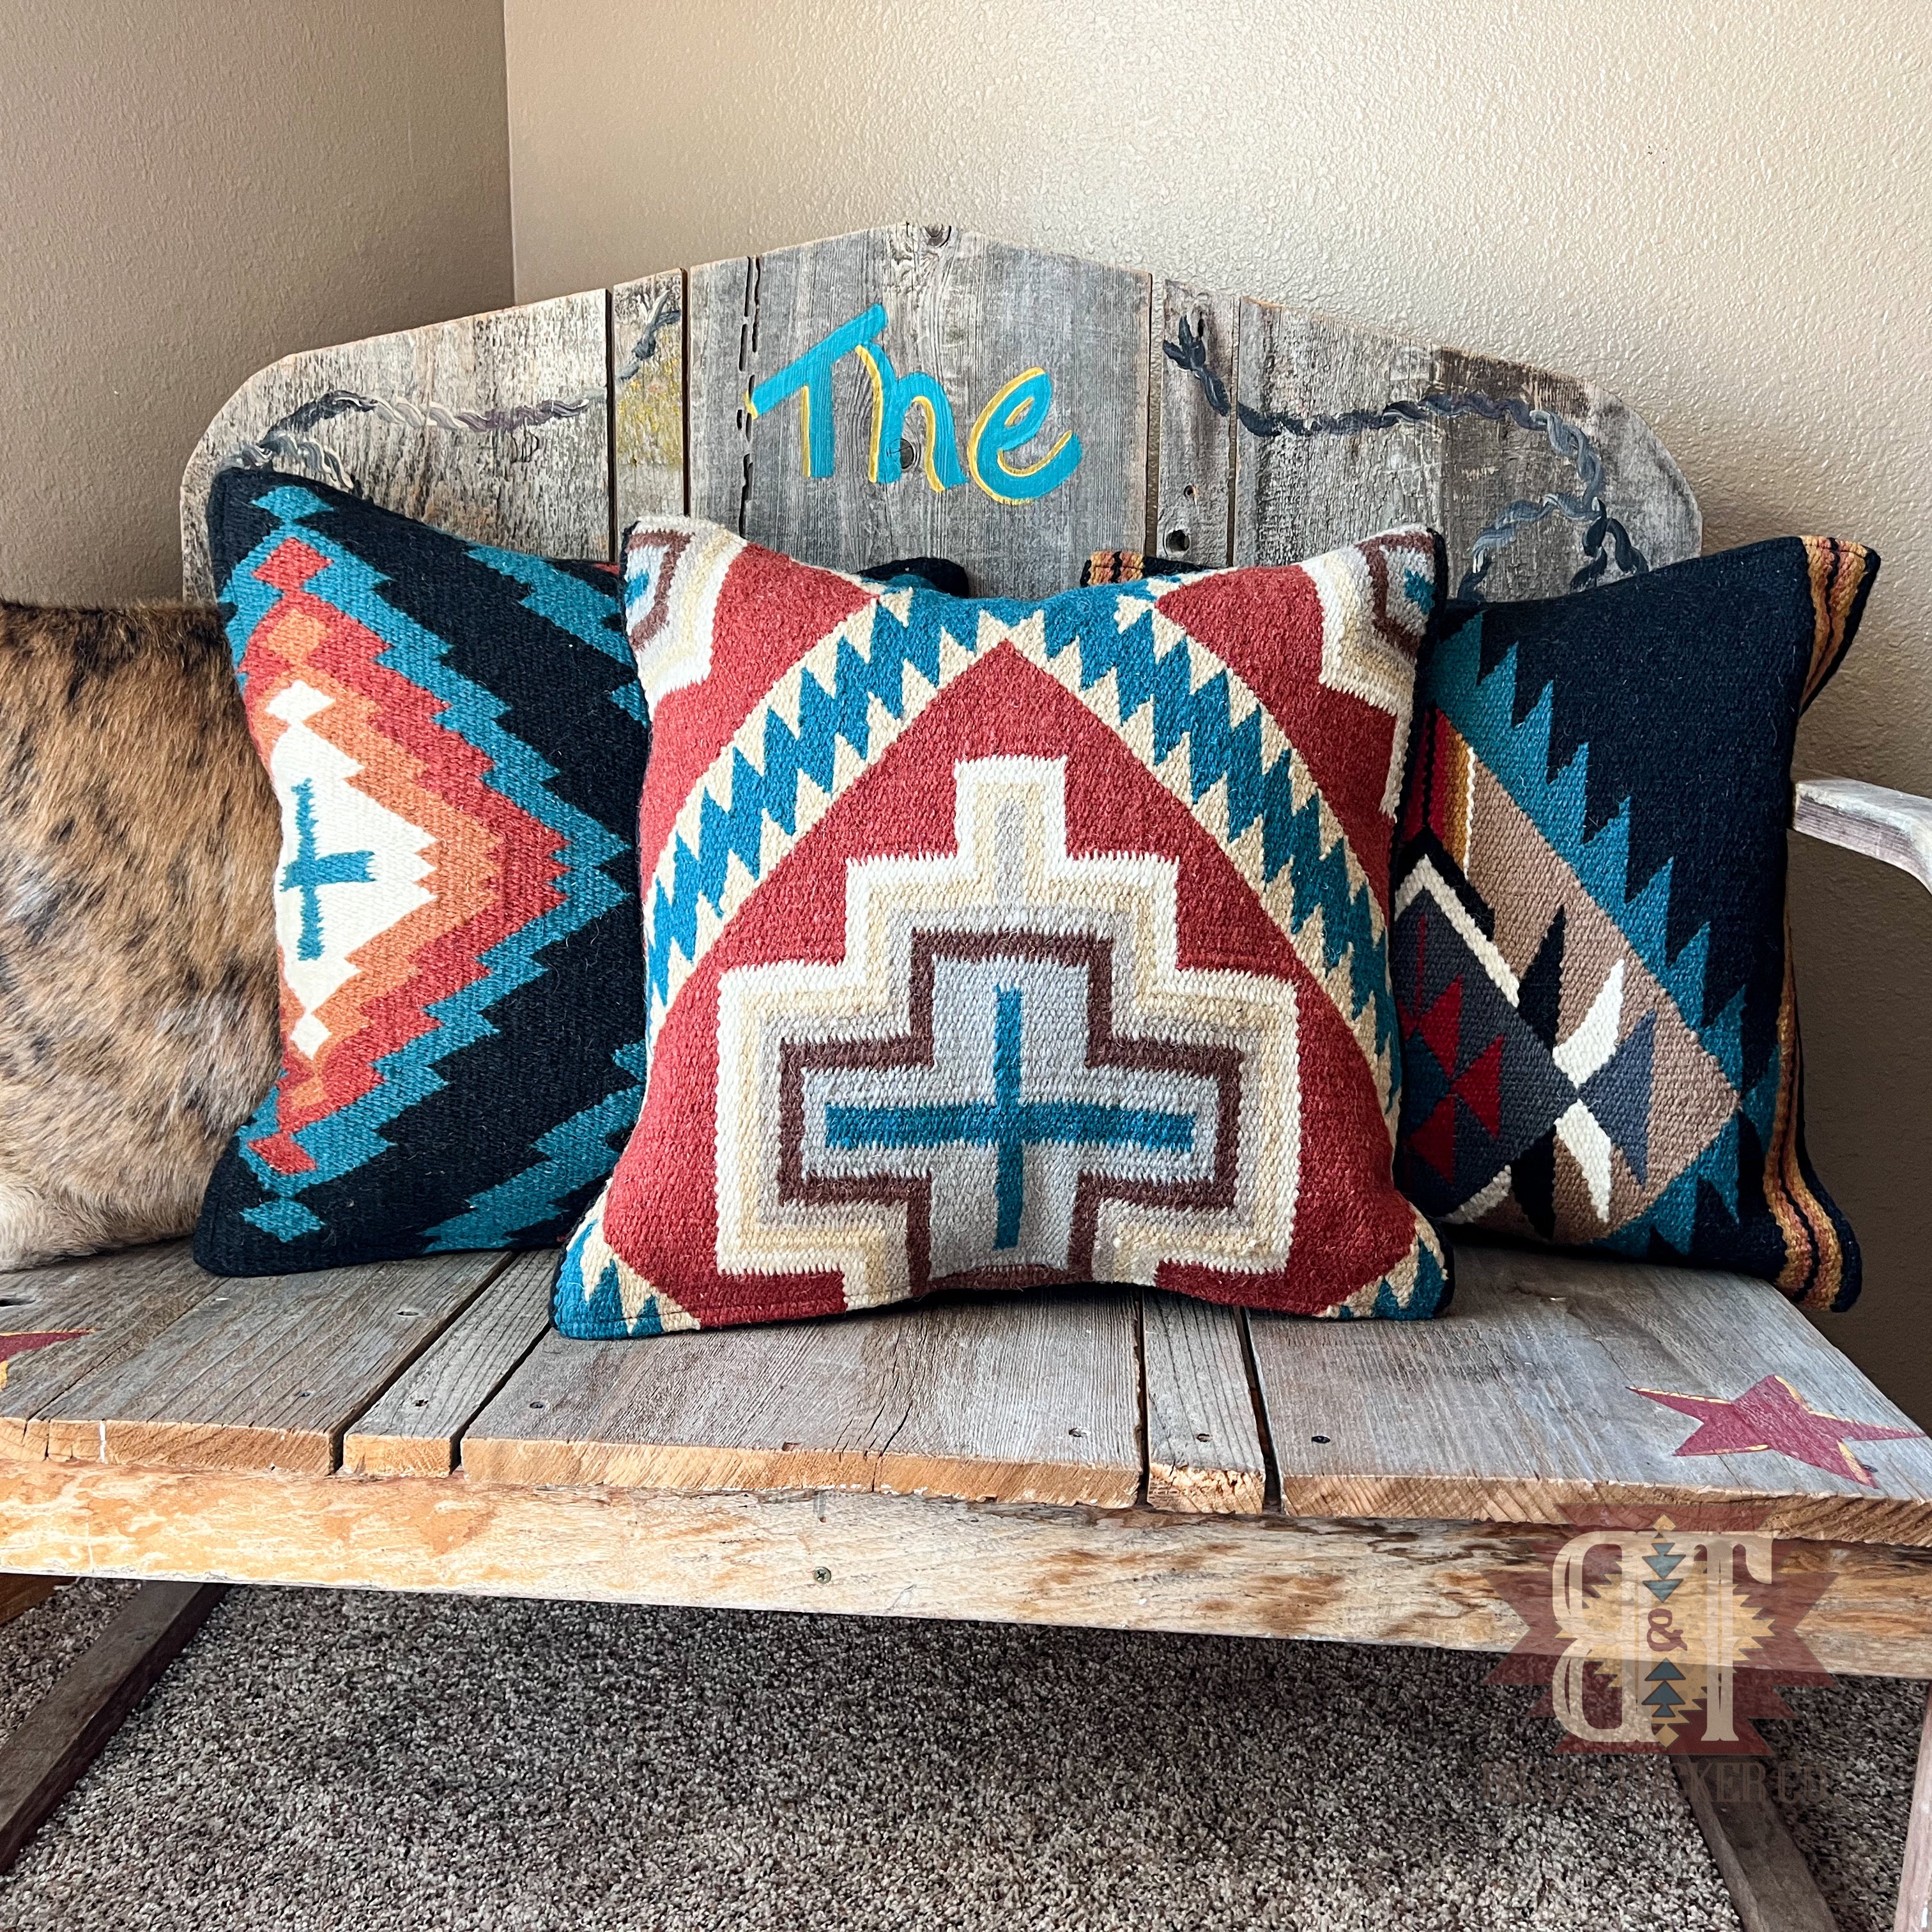 The Pocatello Pillow